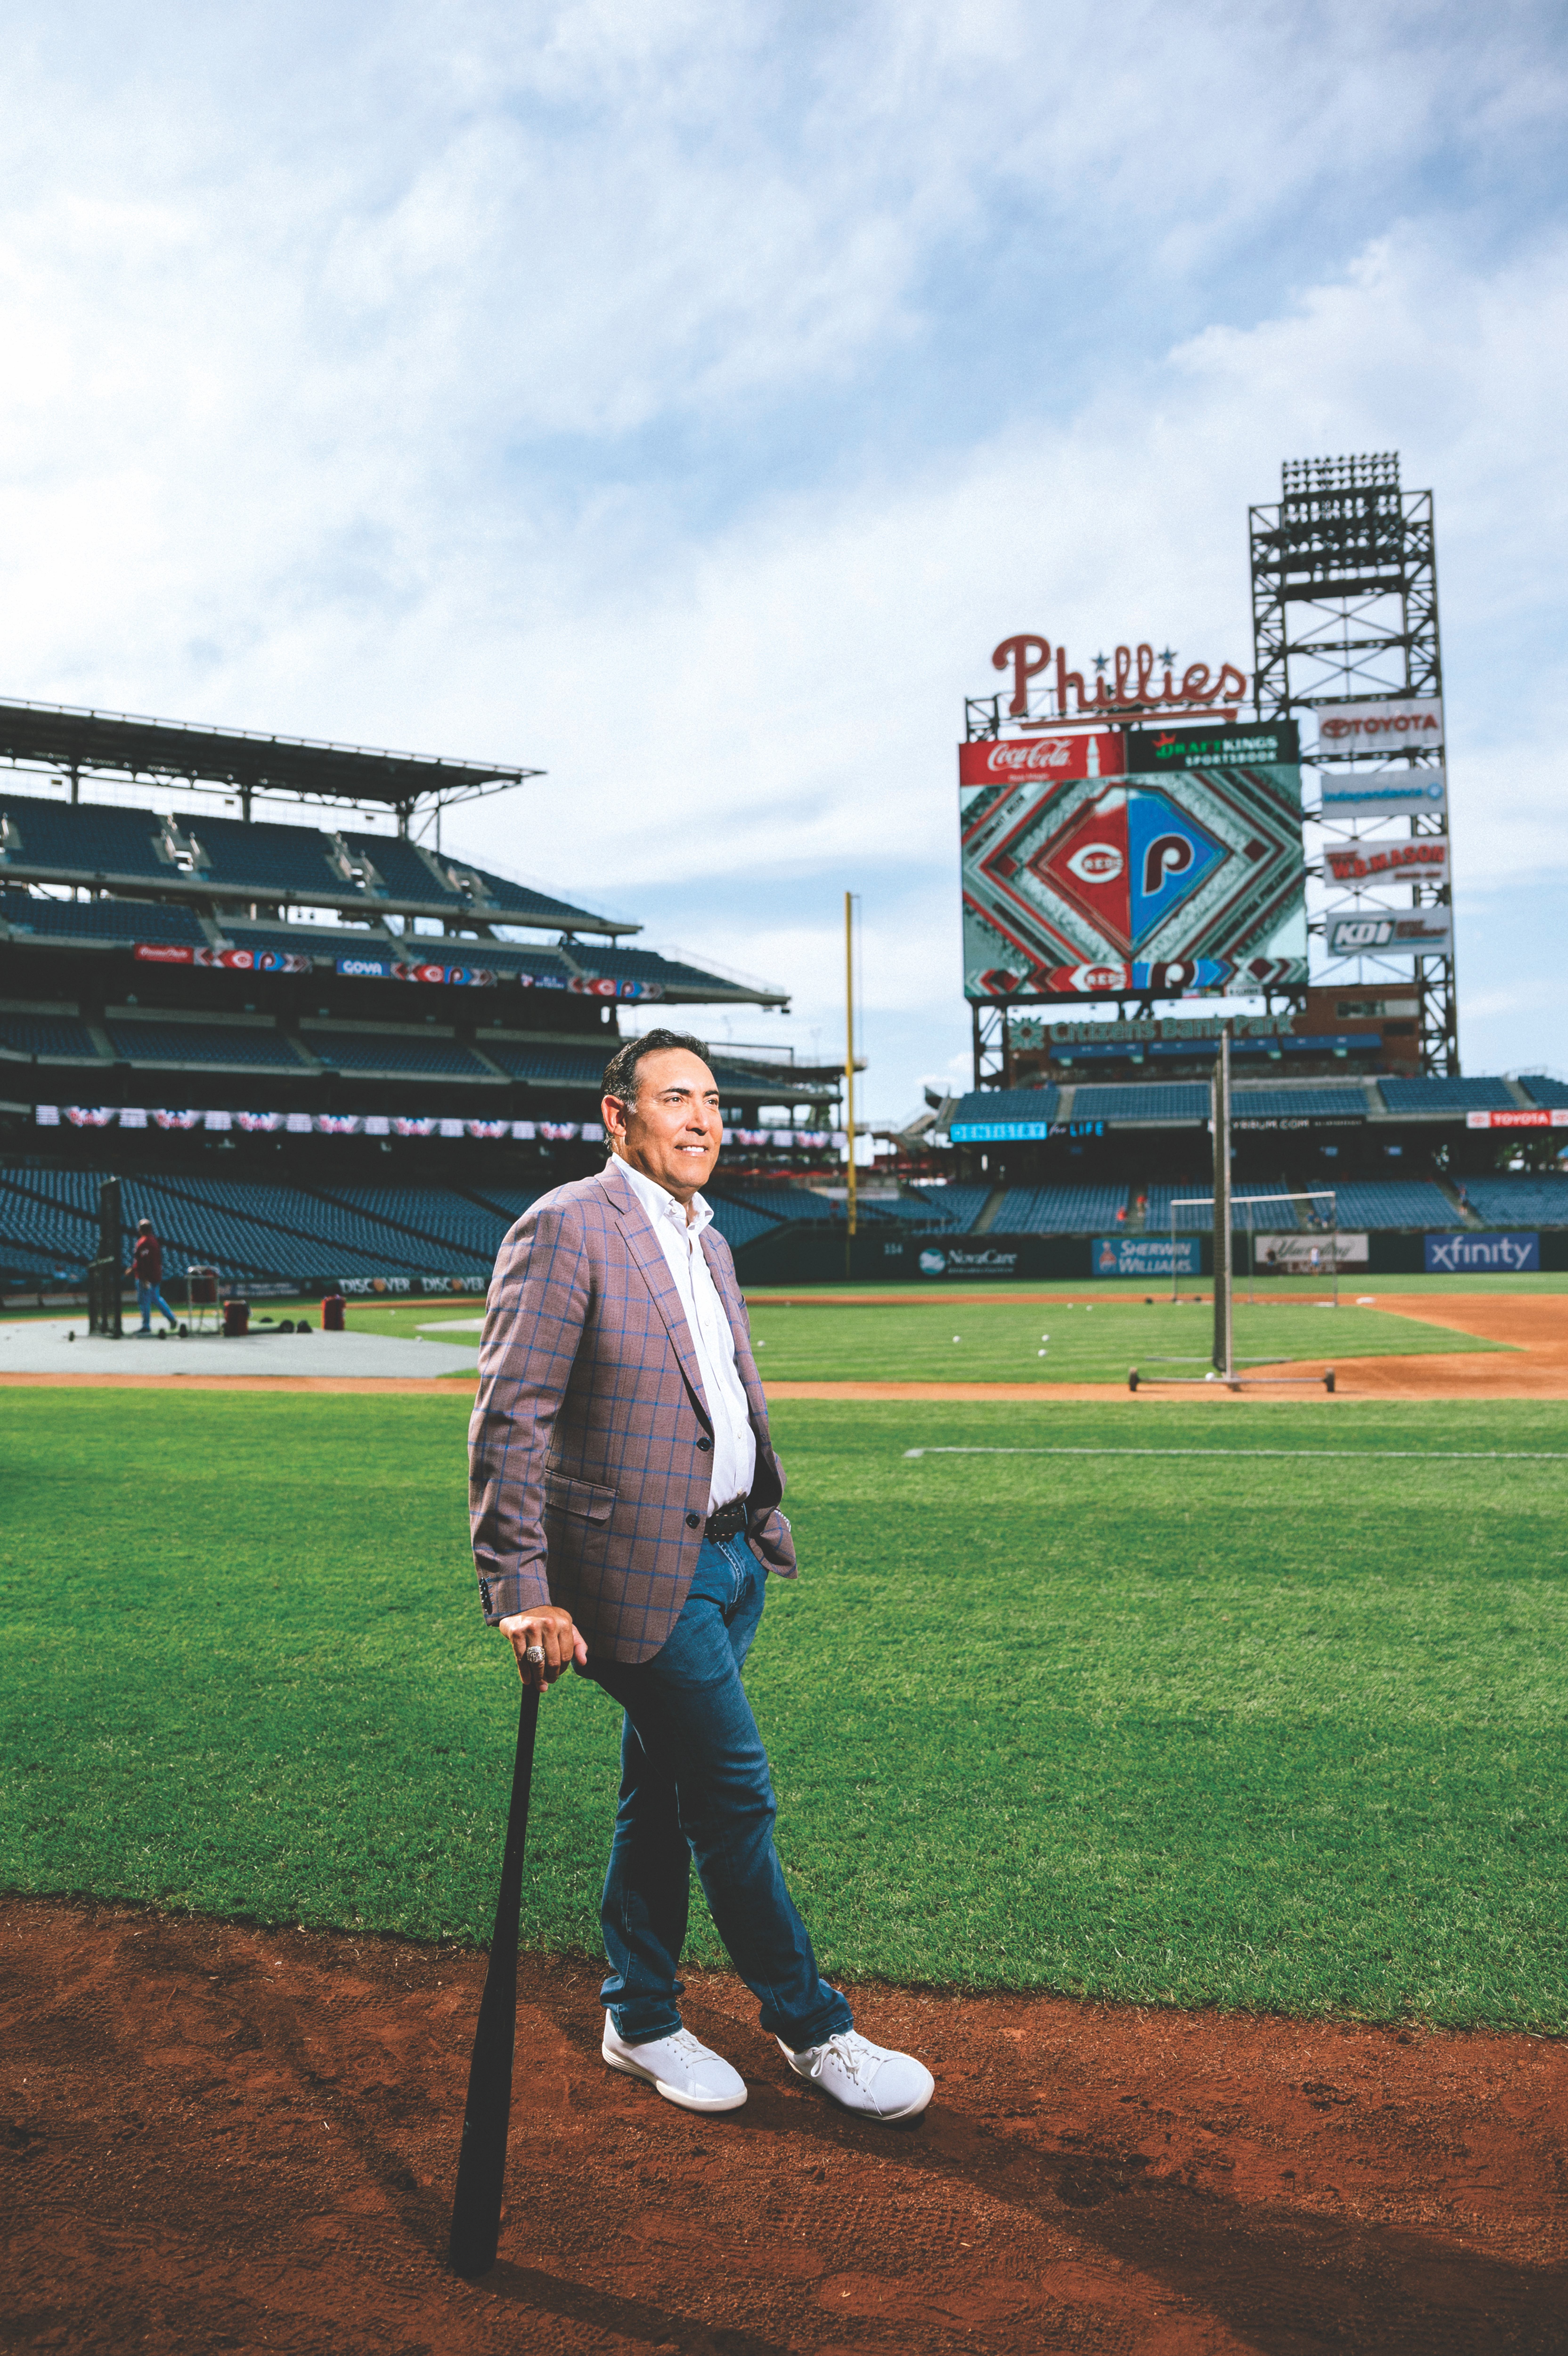 Cinco de las 8 temporadas de Rubén Amaro en la MLB las jugó con los Phillies. Foto: Dreamartstudio.vision